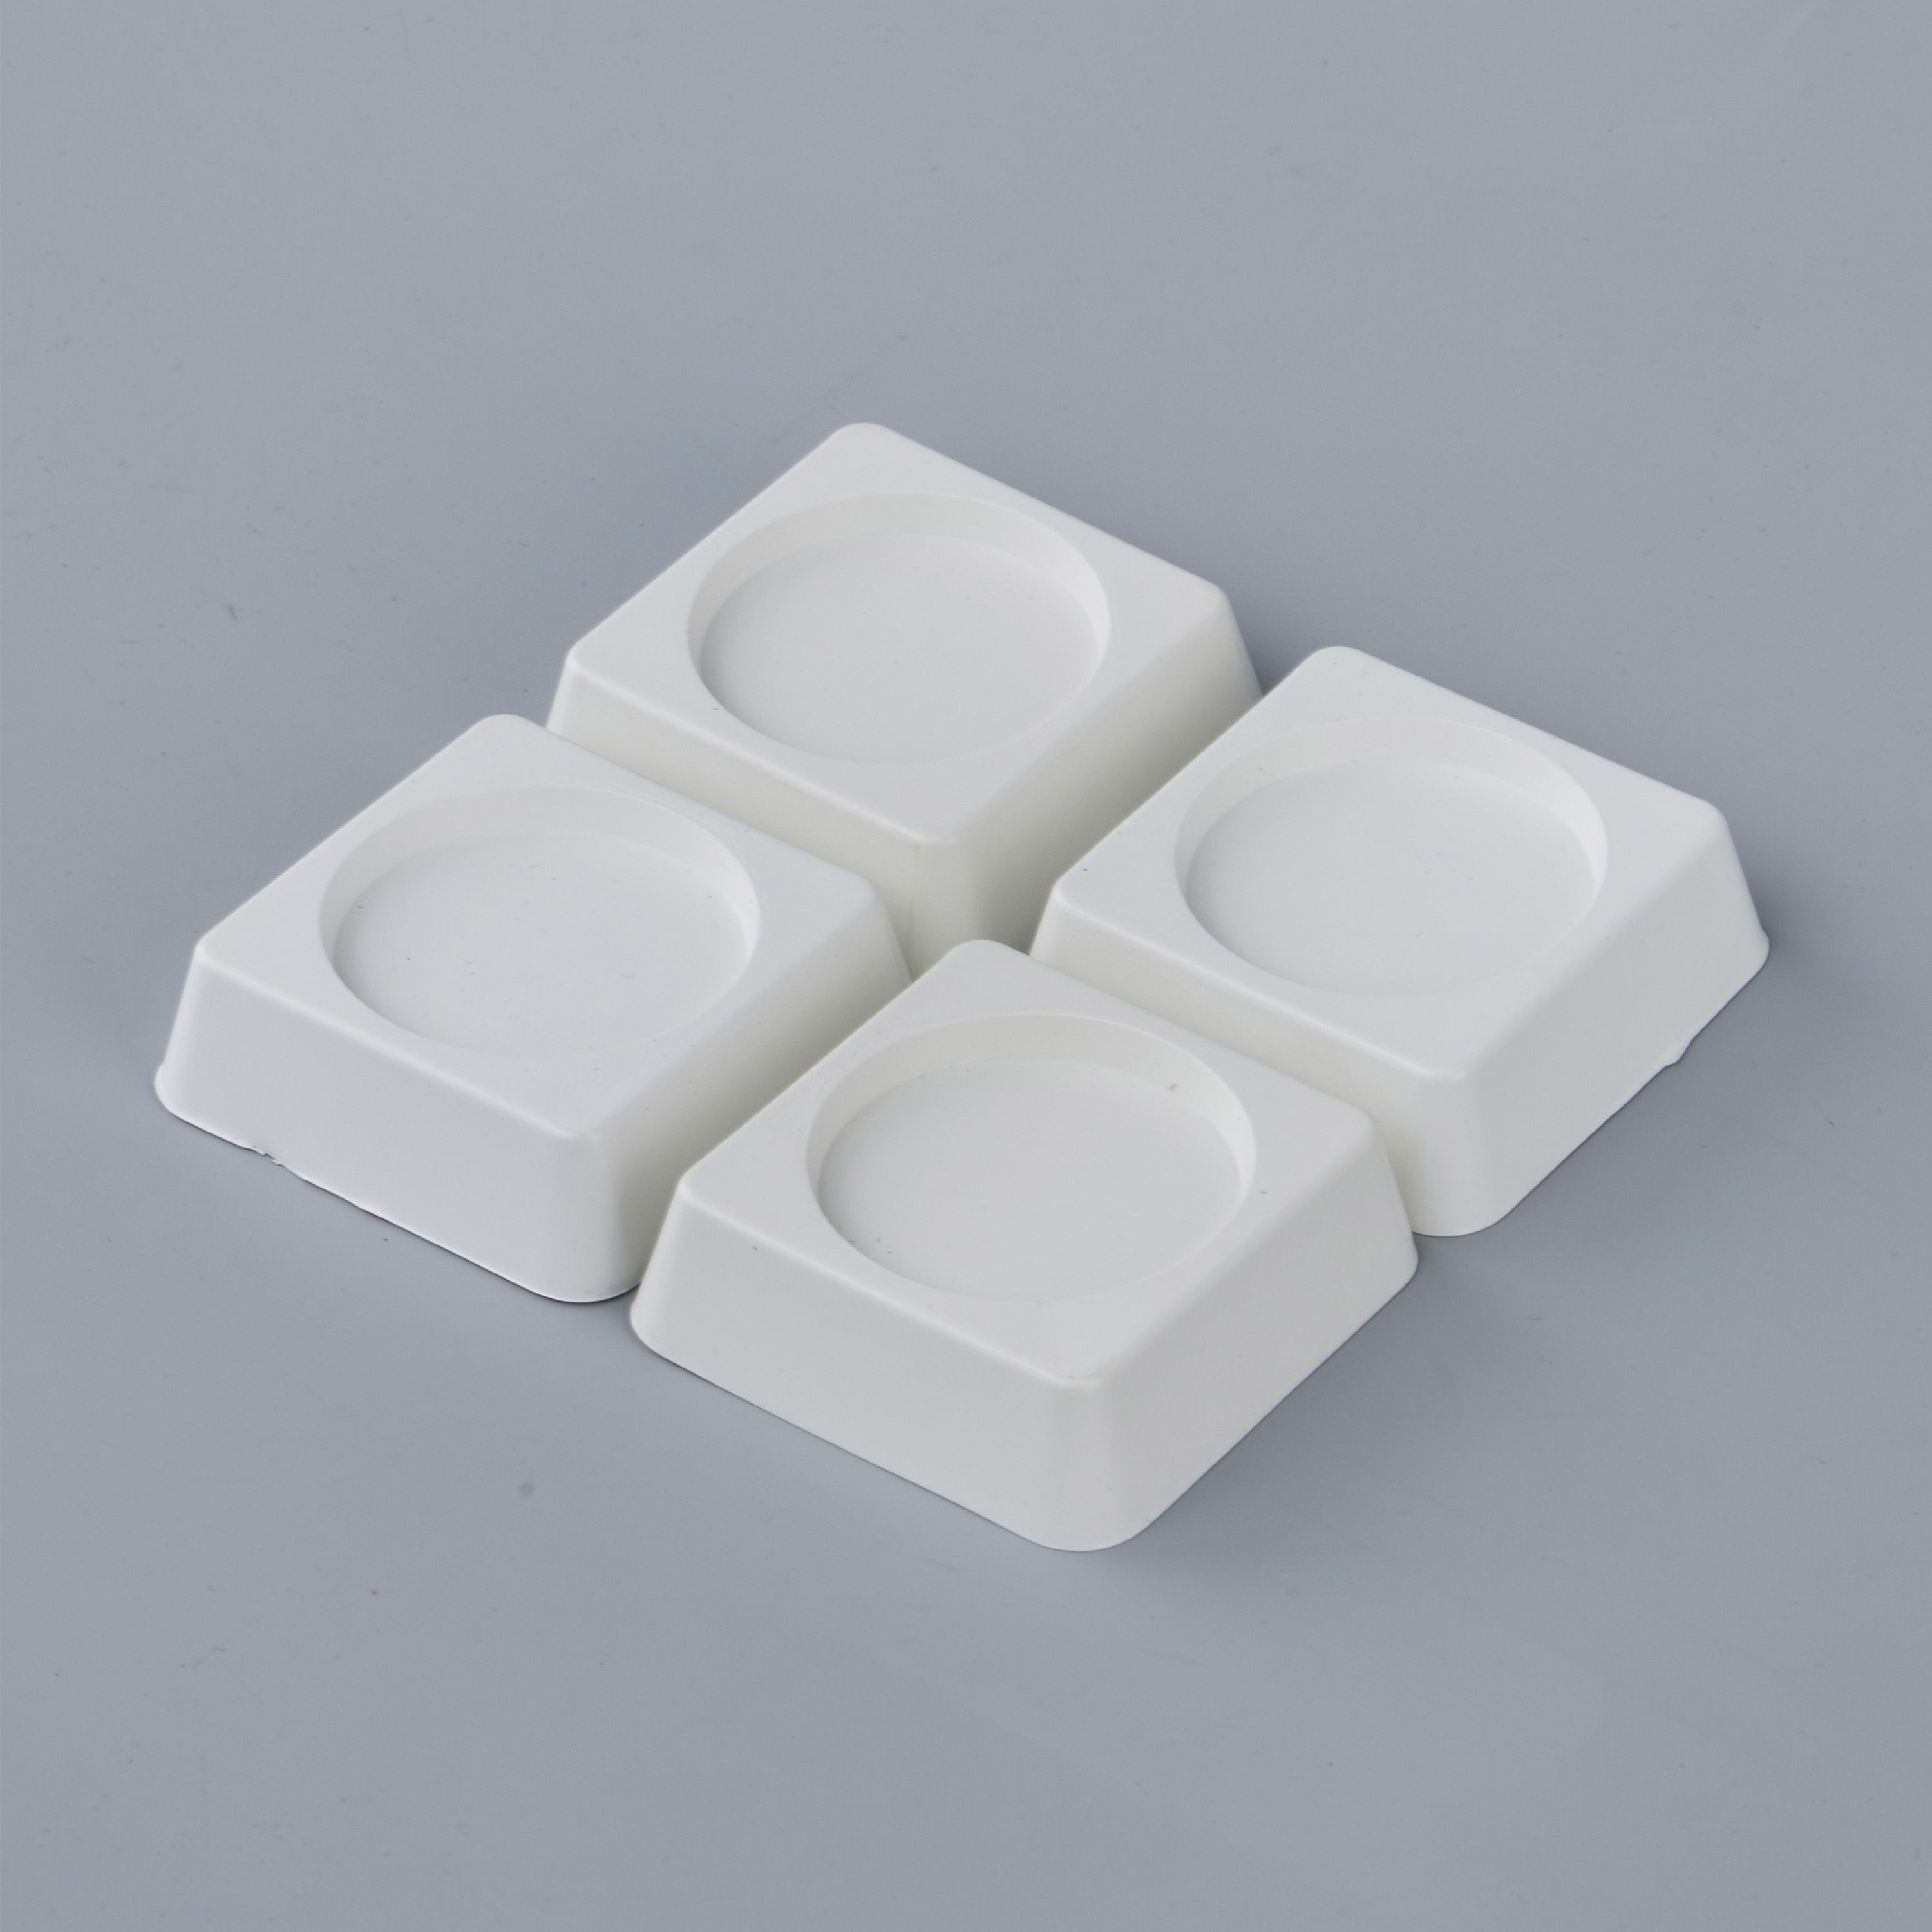 Антивибрационныеподставкидлястиральноймашиныихолодильника,квадратные,4шт.,белые